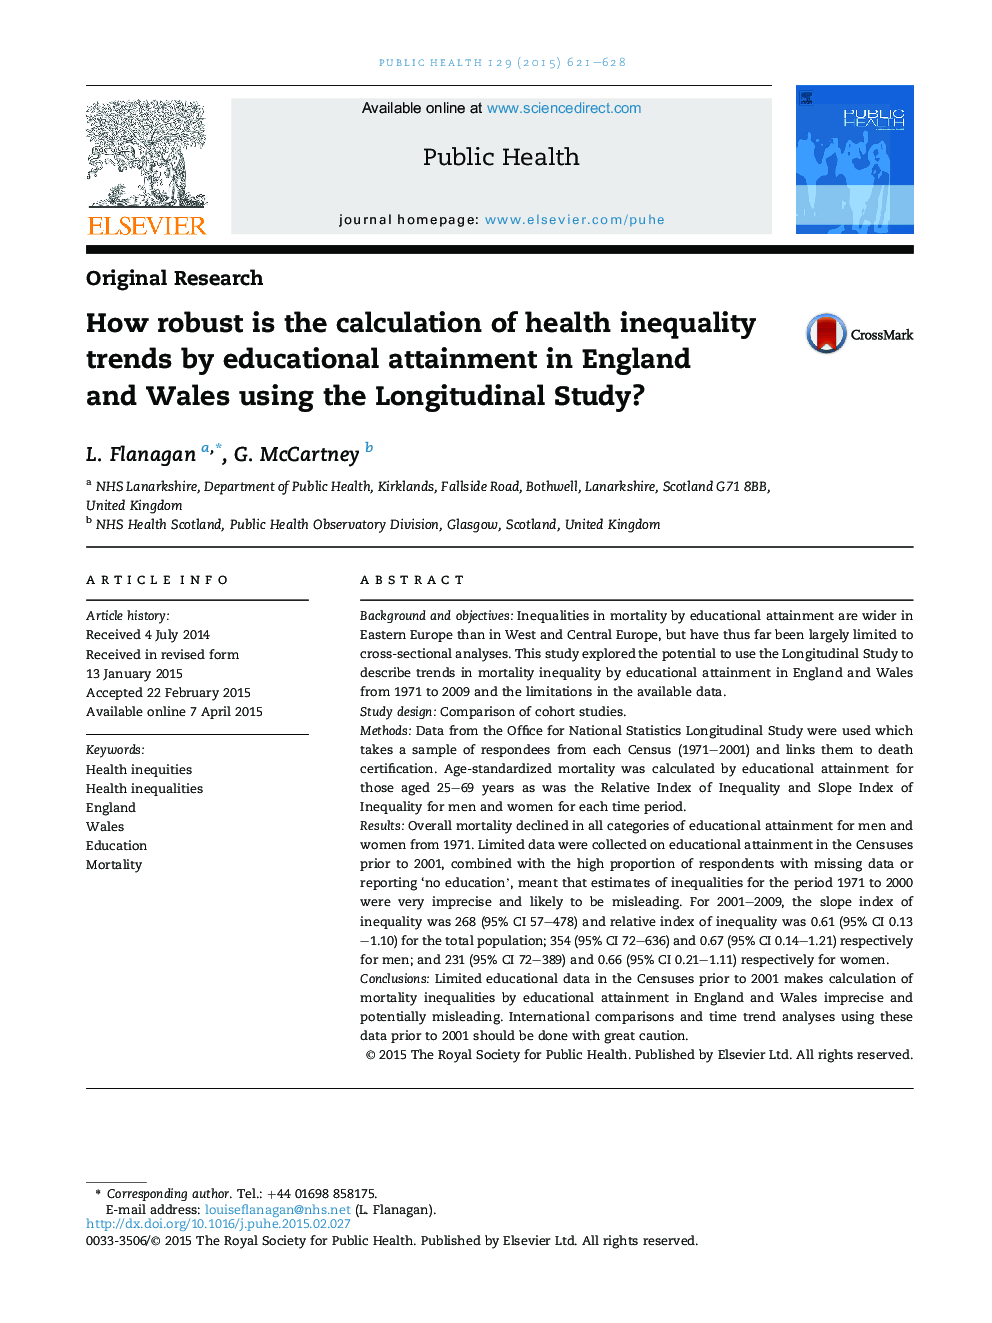 محاسبه گرایش های نابرابری بهداشتی توسط تحصیلات در انگلستان و ویلز با استفاده از مطالعه طولی چگونه محاسبه شد؟ 